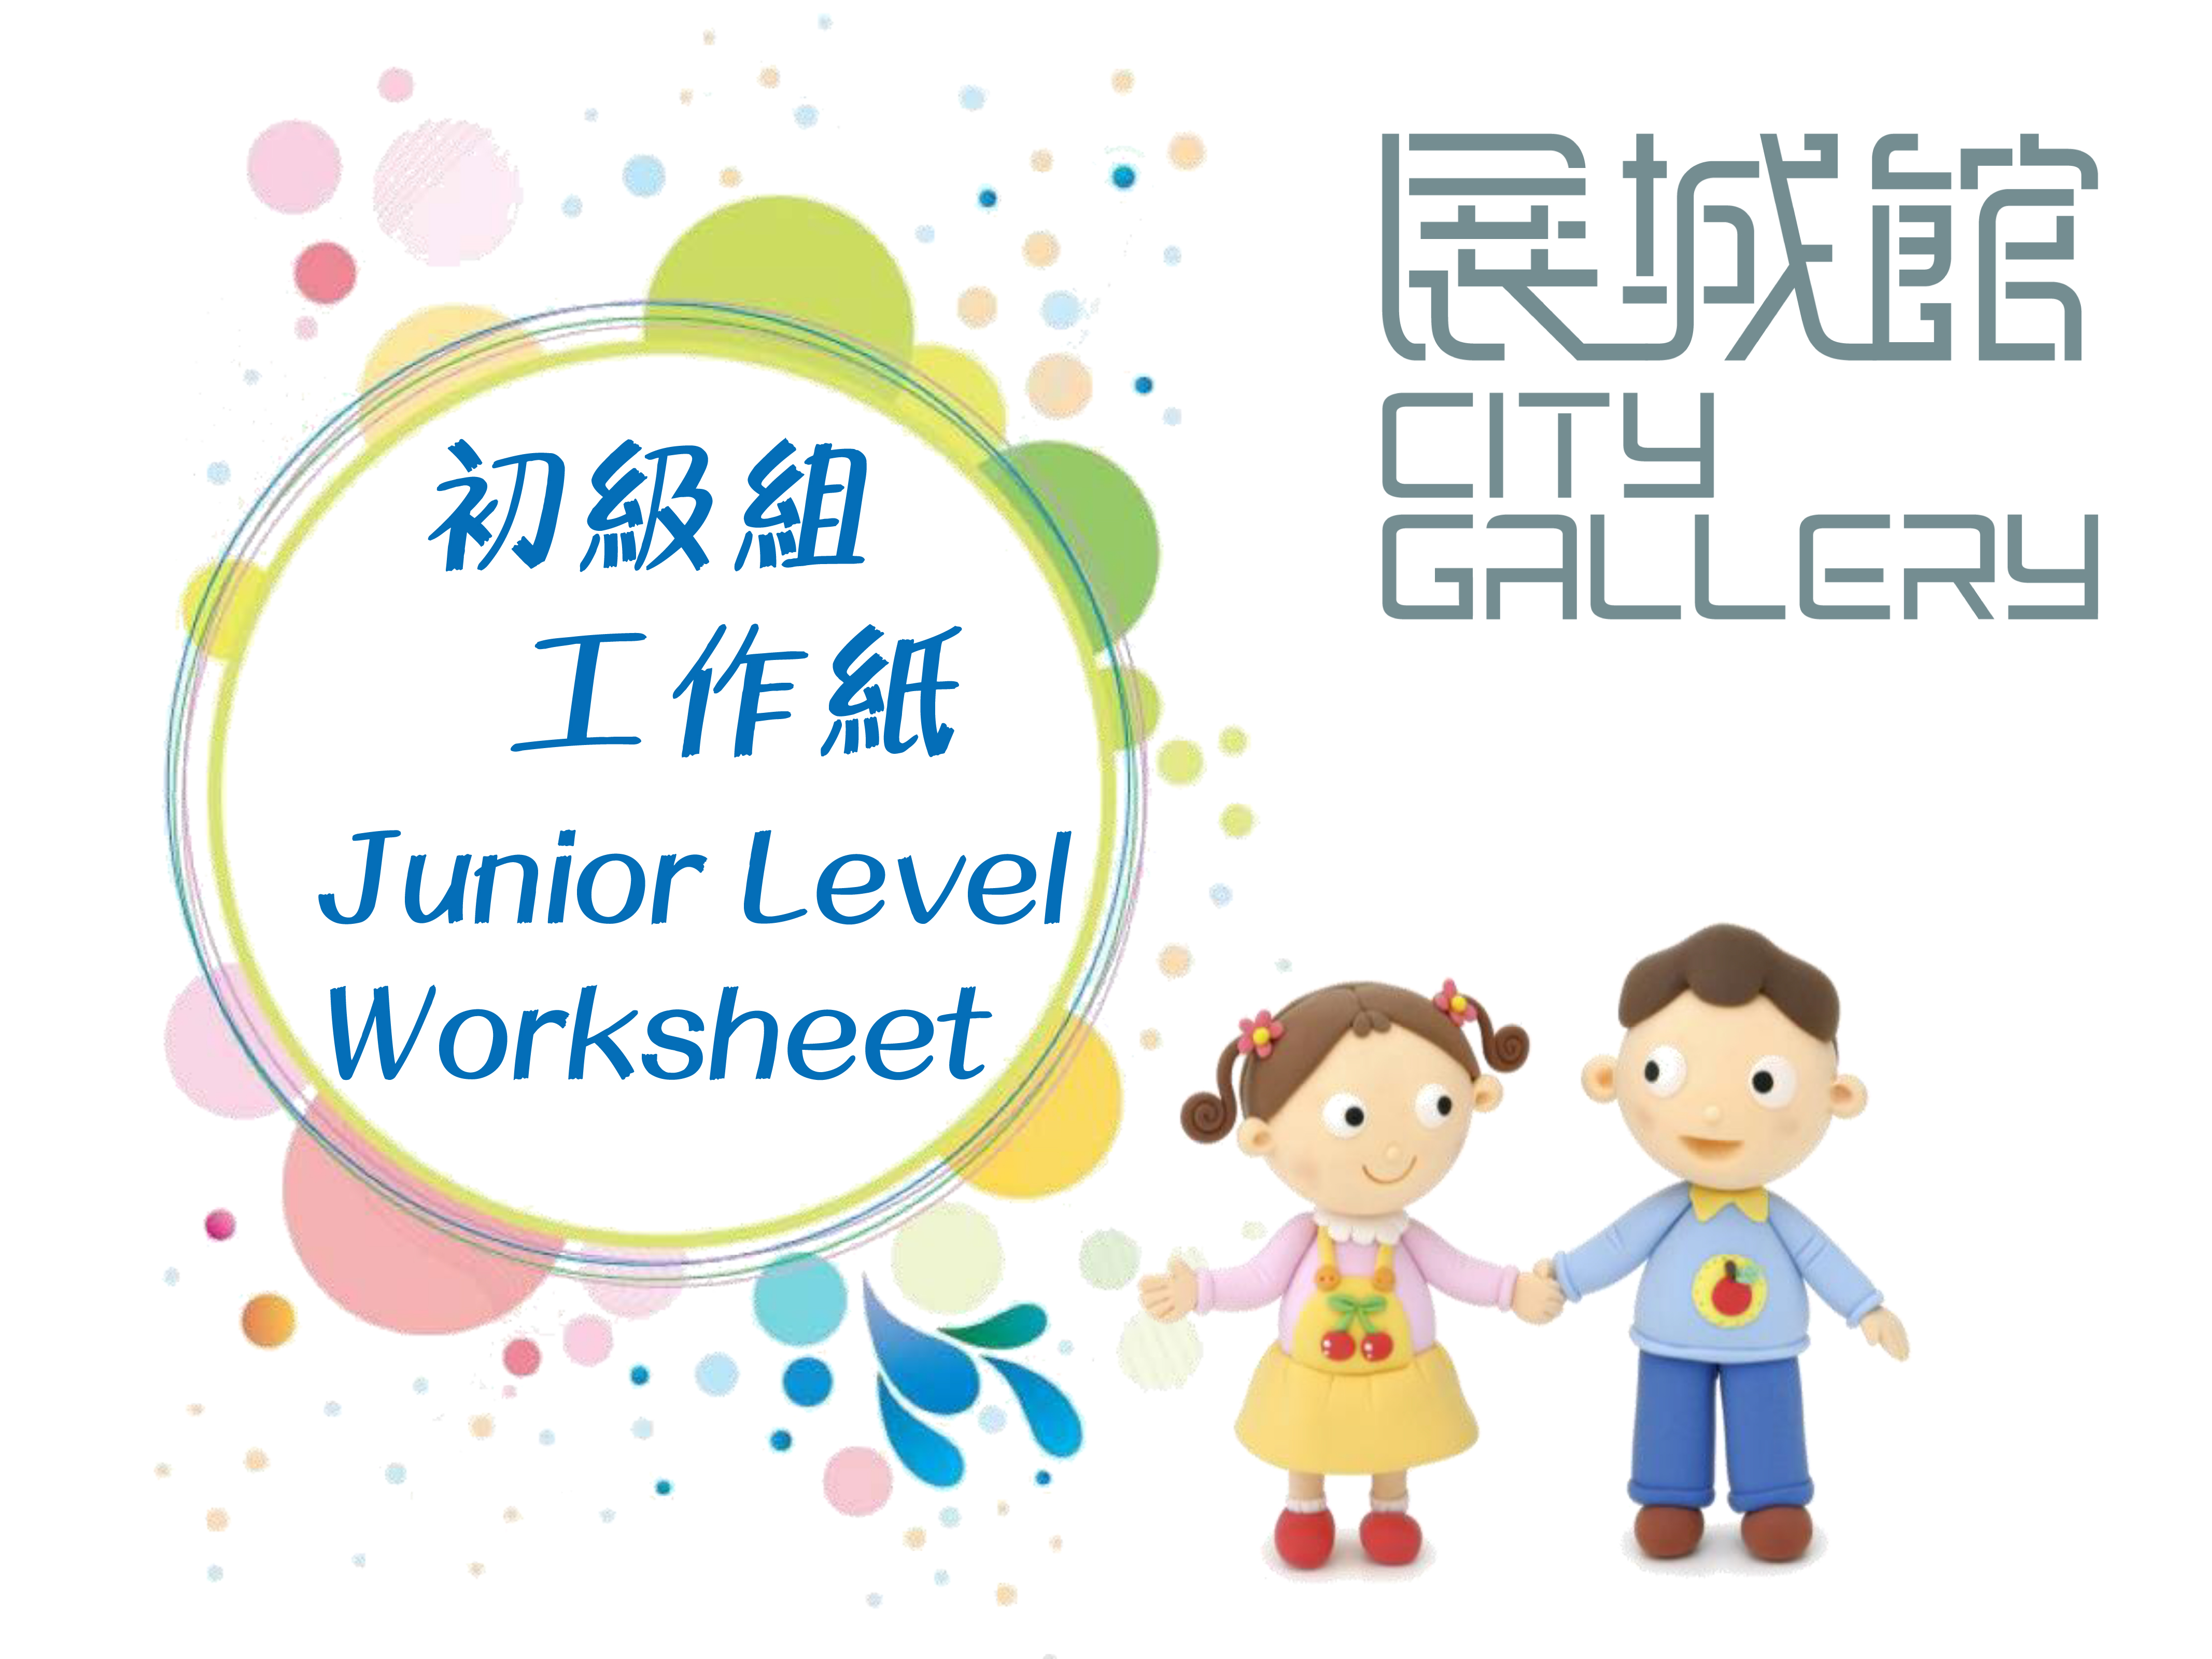 Title: Junior Level Worksheet